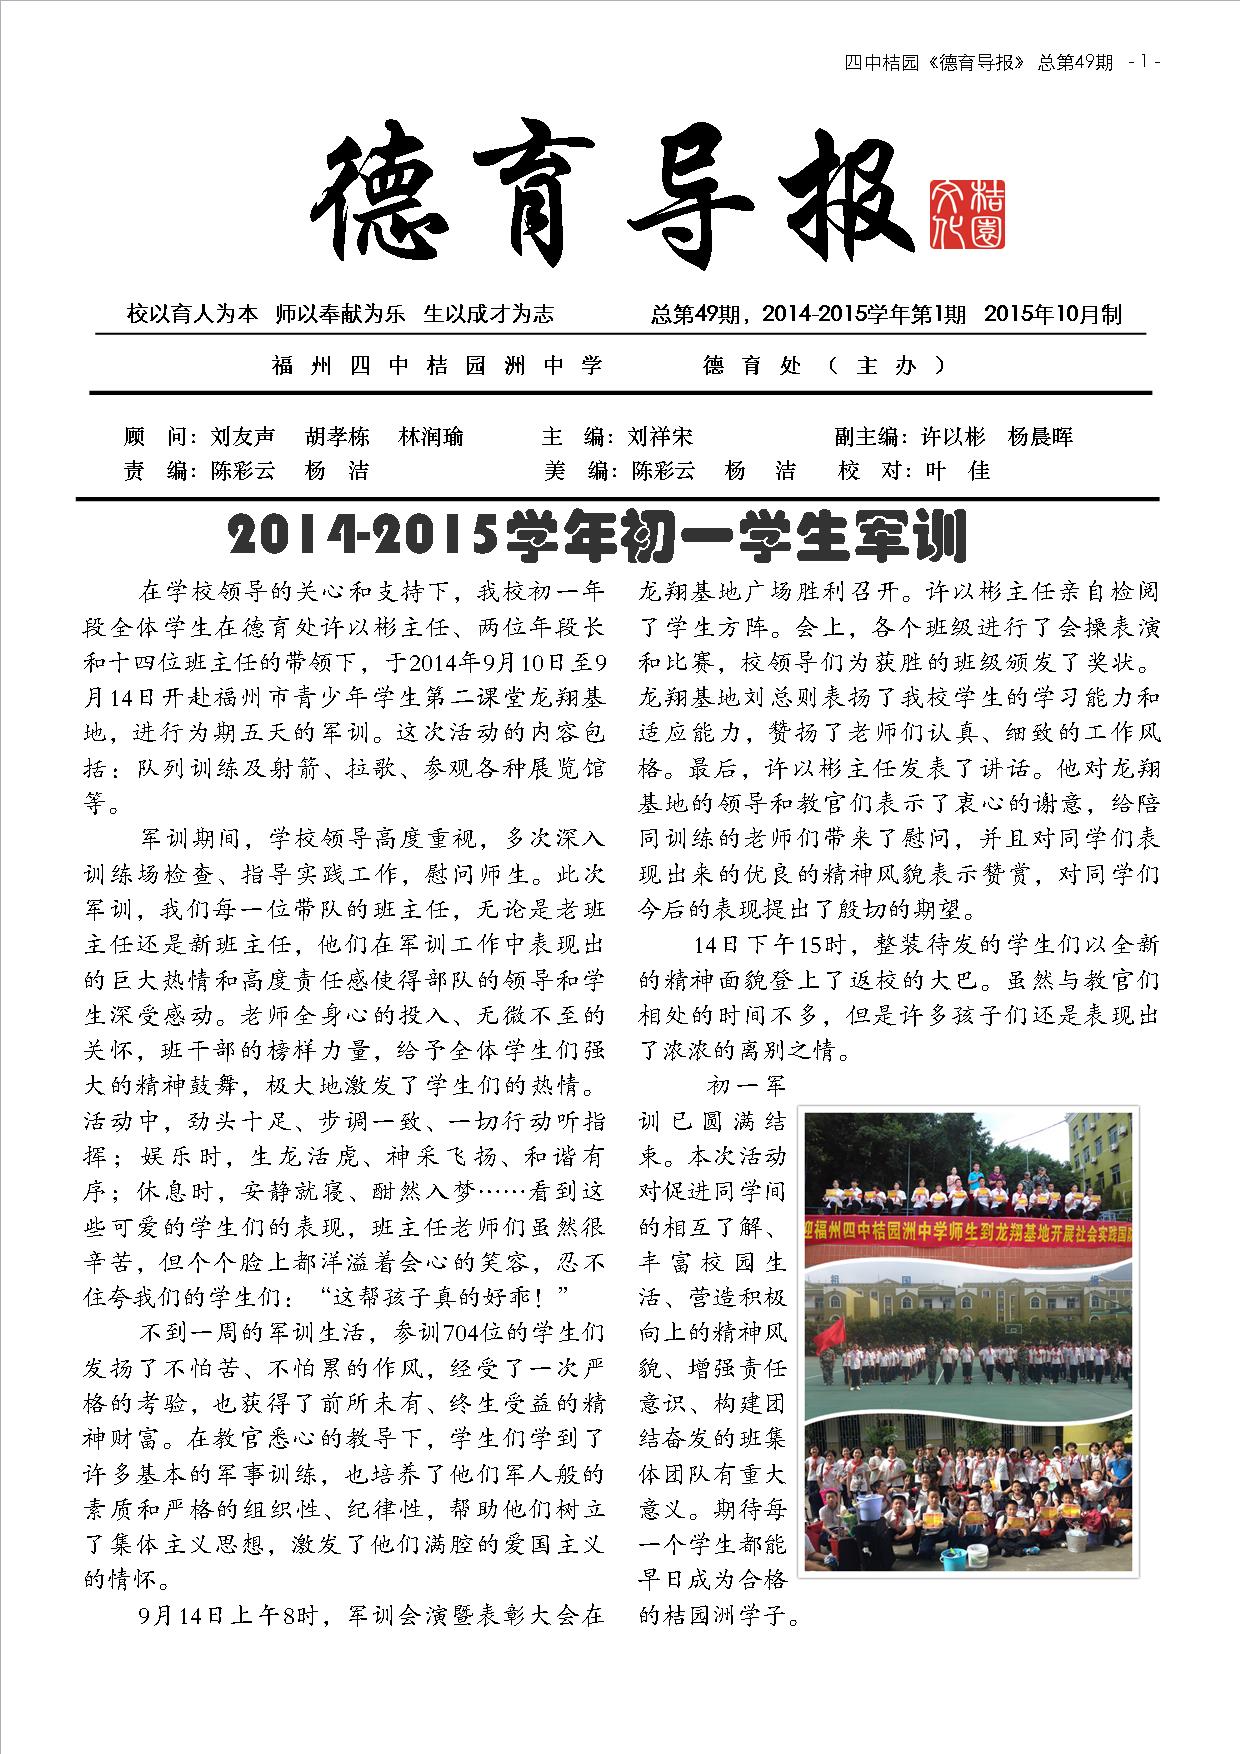 德育导报 NO.49  第6卷，第1期  2014年10月  (1).jpg